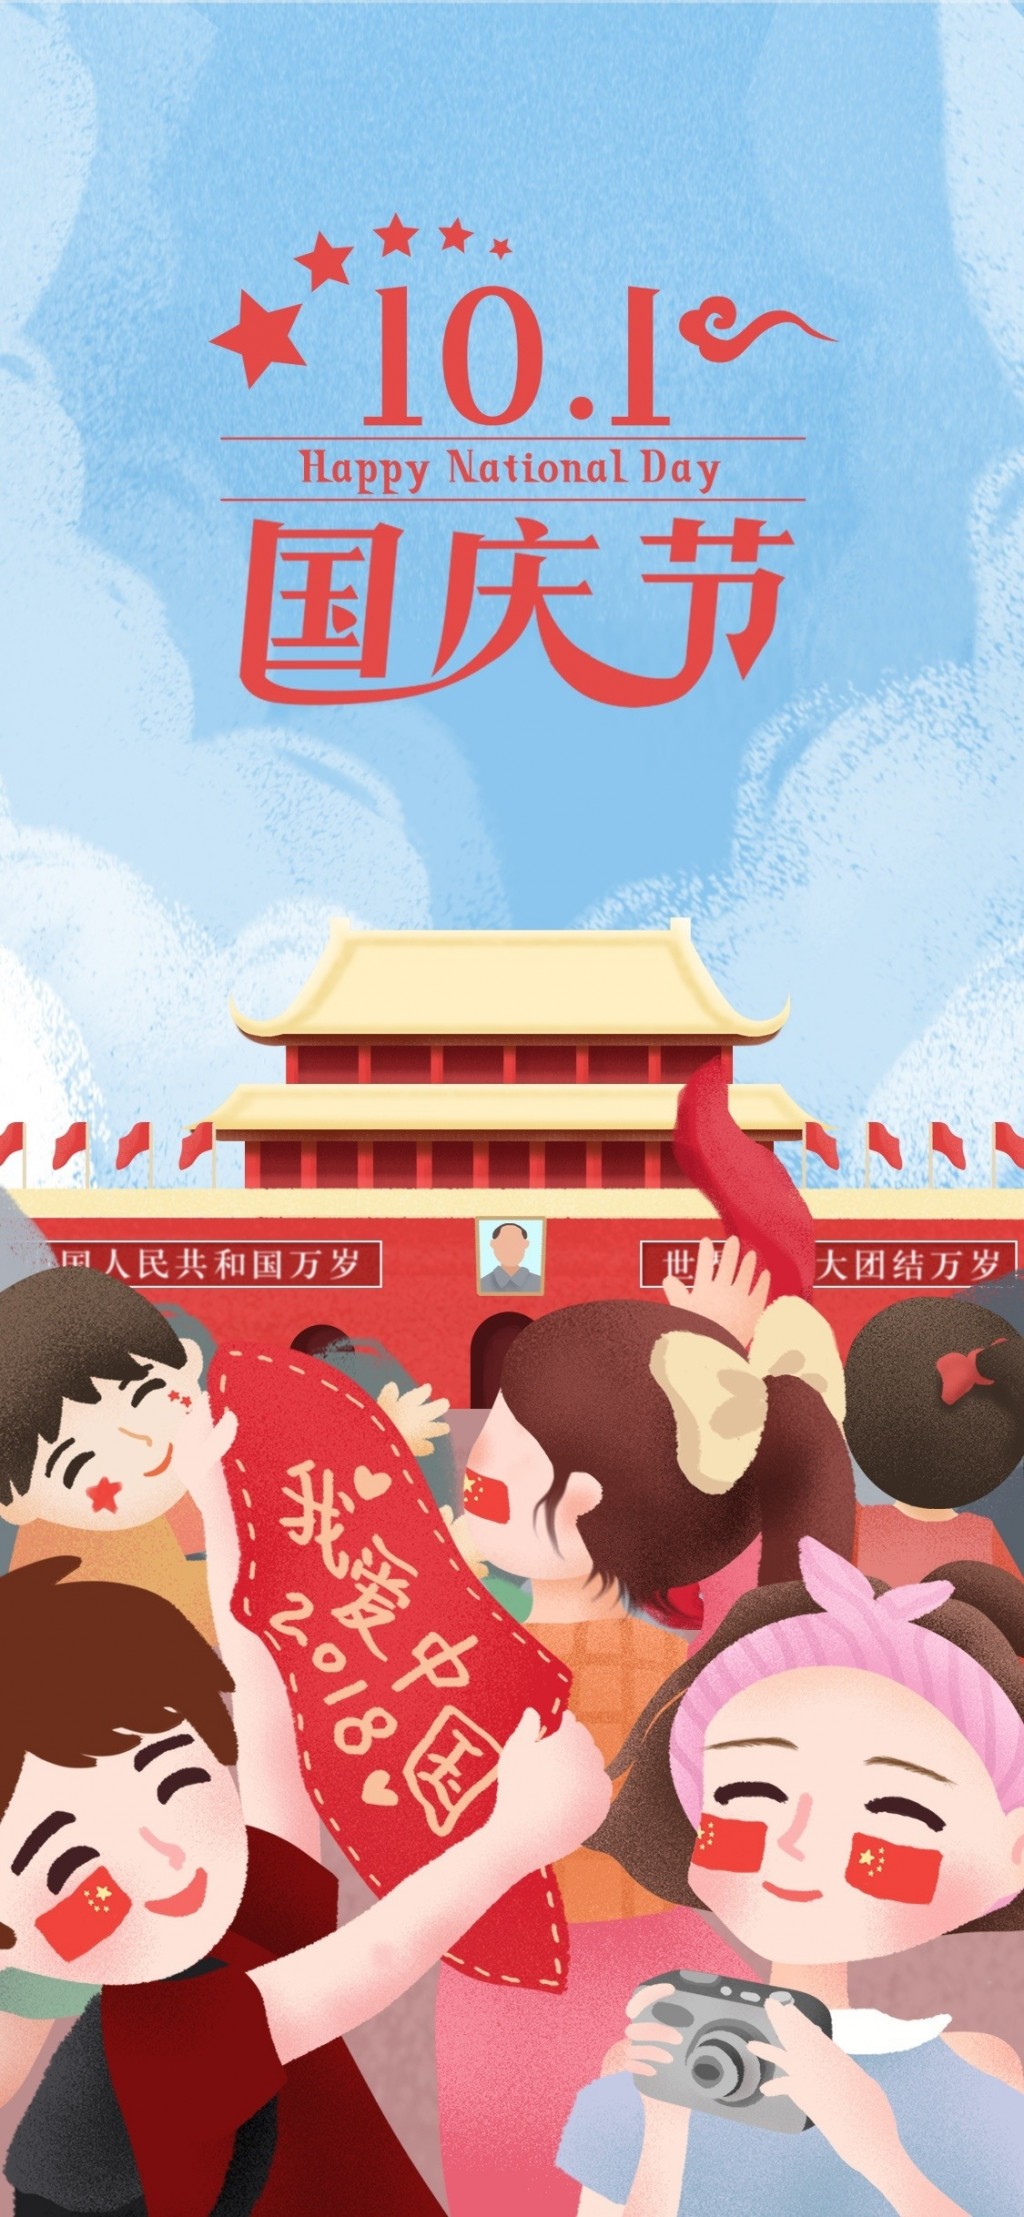 国庆节简约插画手机壁纸